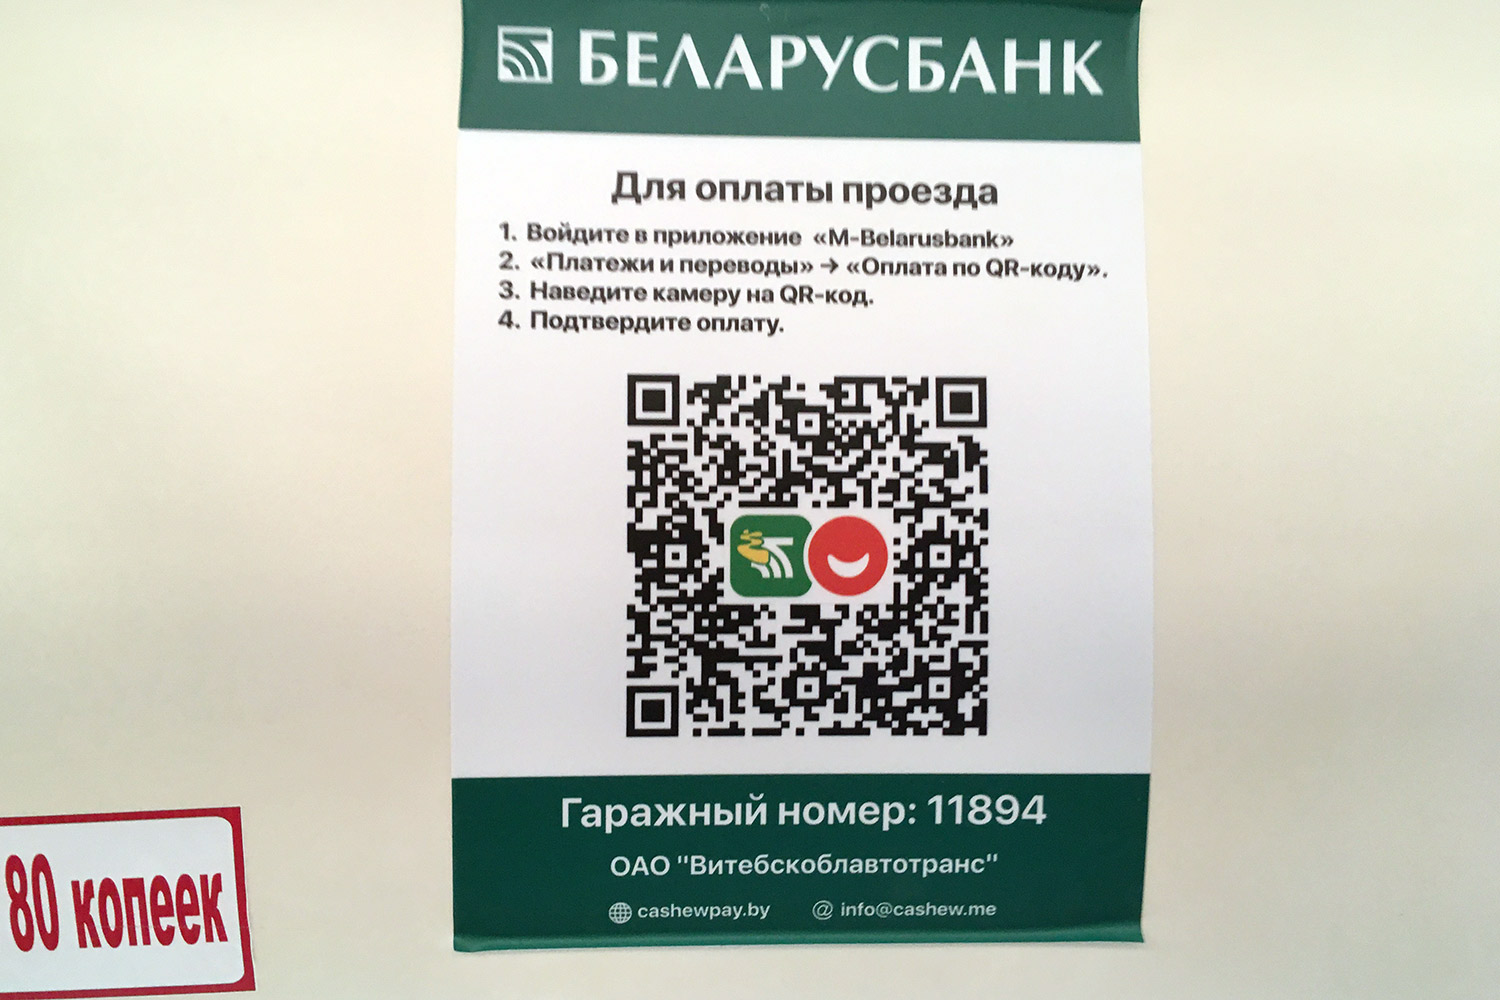 QR-код оплаты проезда в приложении «M-Belarusbank»  в автобусах Витебска. Фото Сергея Серебро